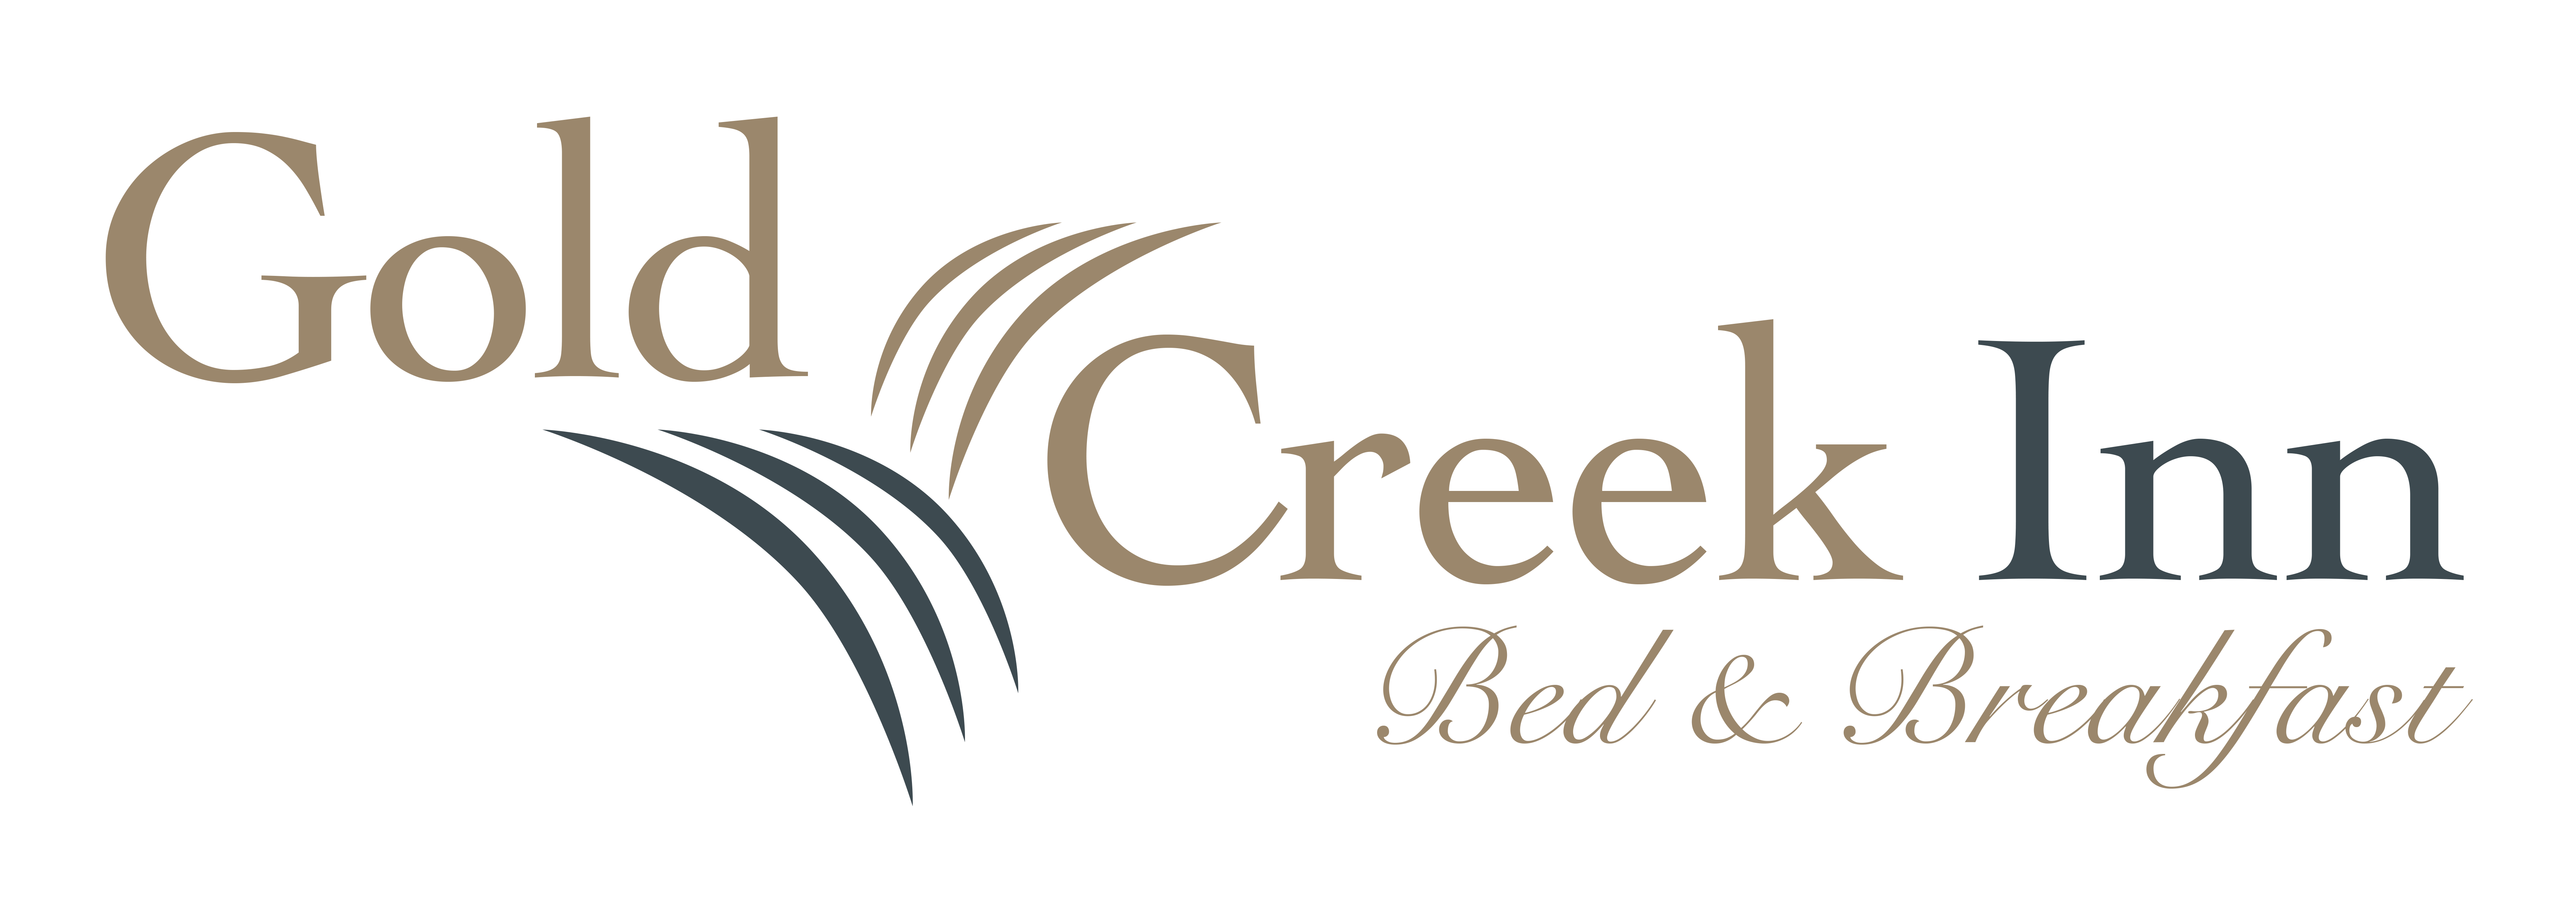 Gold Creek Inn logo